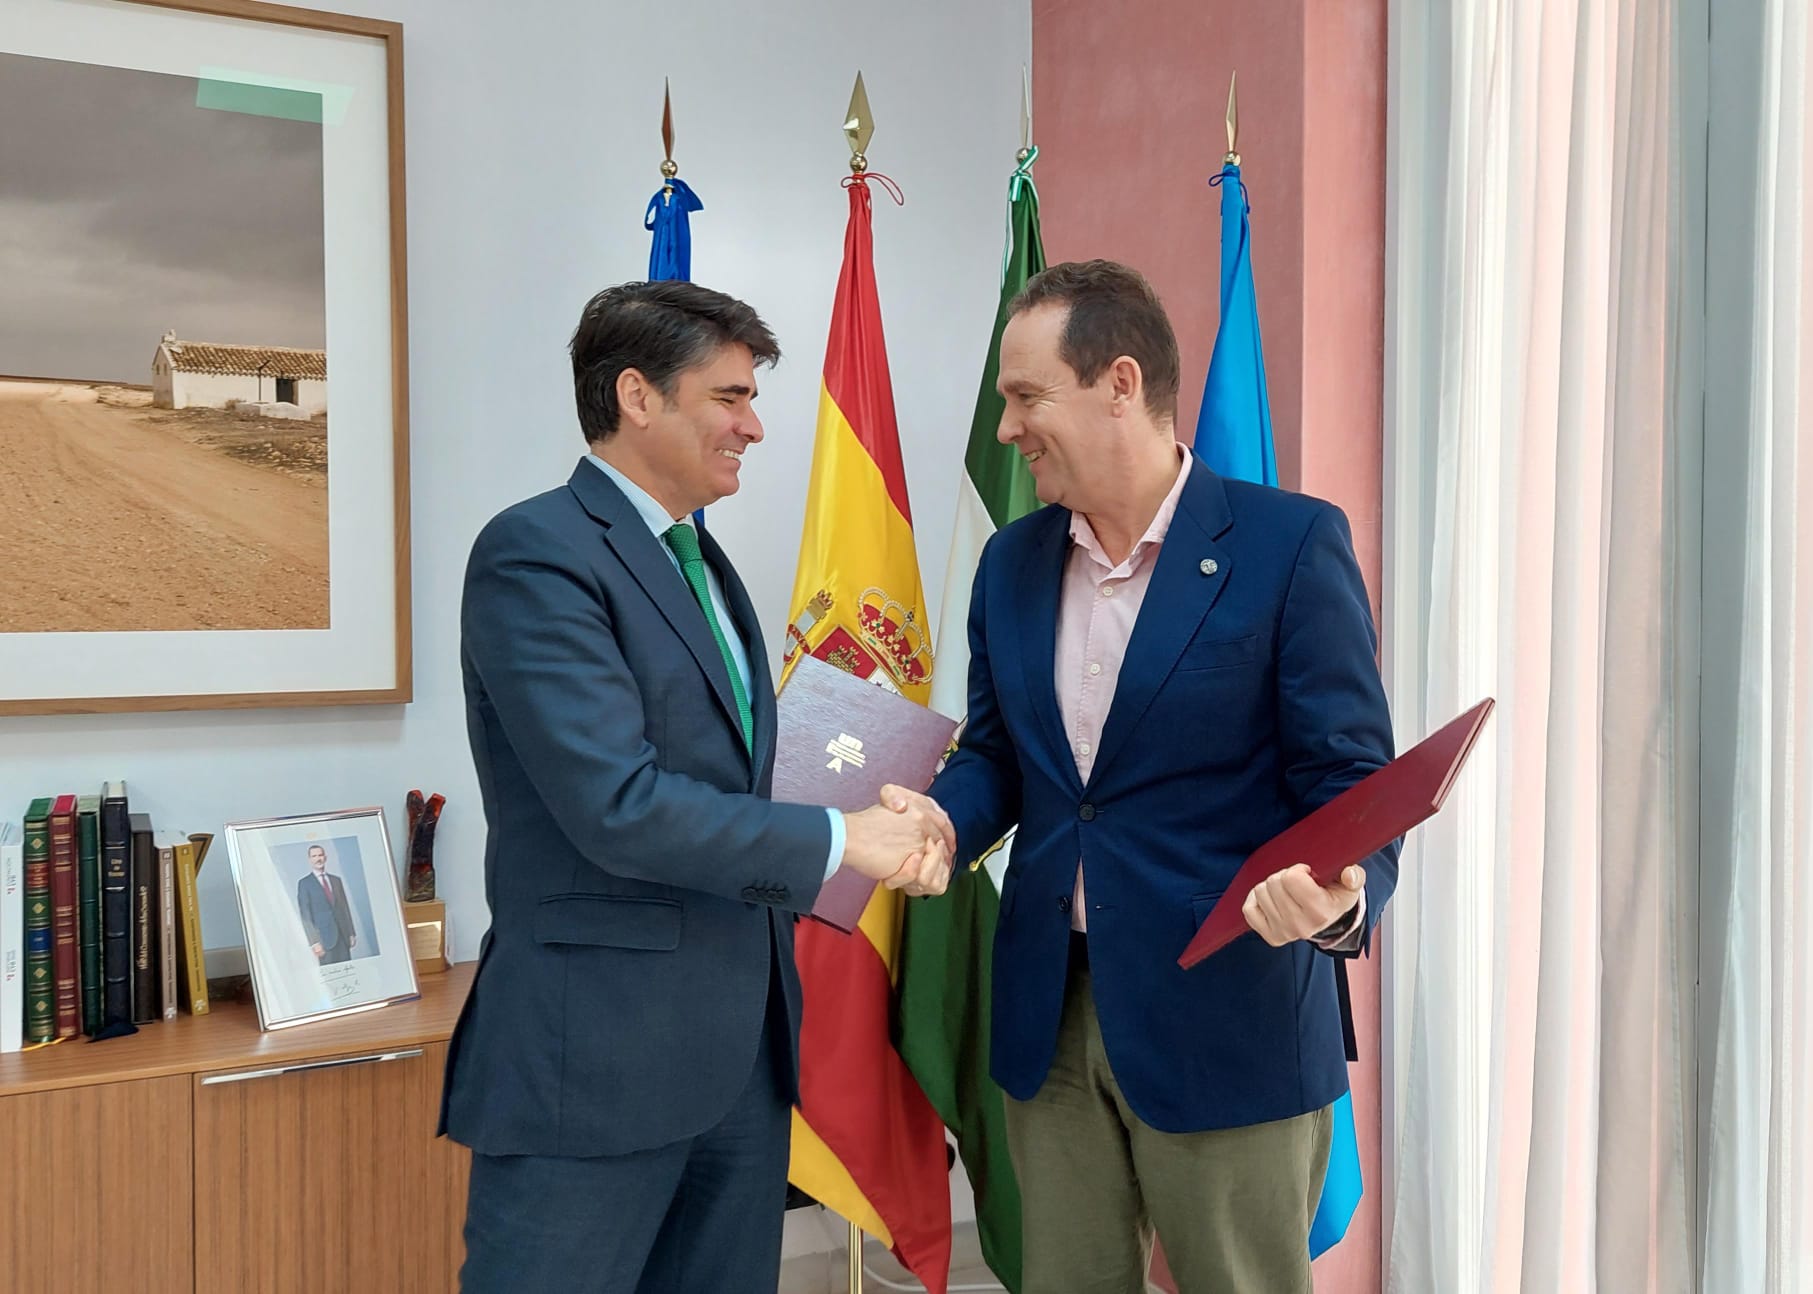 Convenio de colaboración entre Andalucía Emprende y UNIA